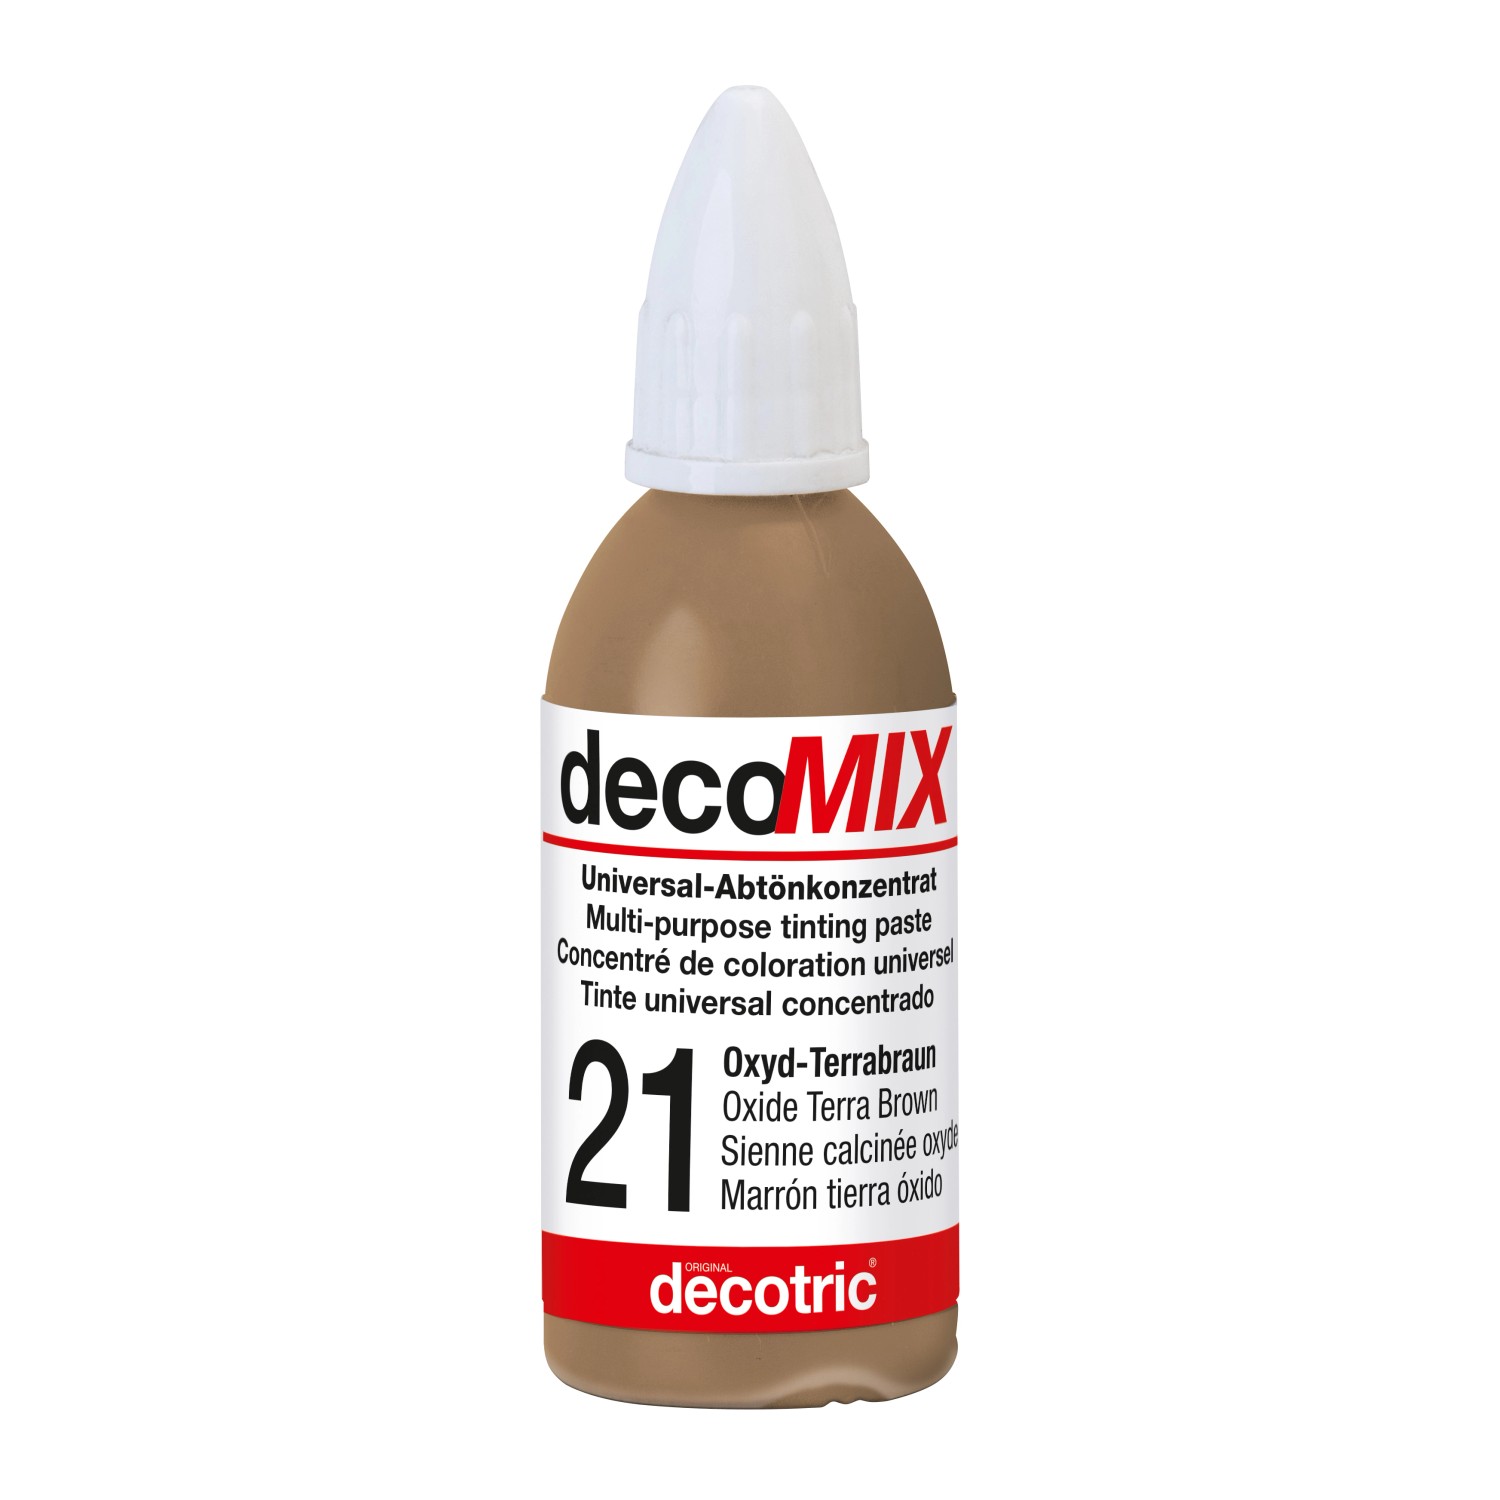 Decomix Universal-Abtönkonzentrat Oxyd-Terrabraun 20 ml von decotric